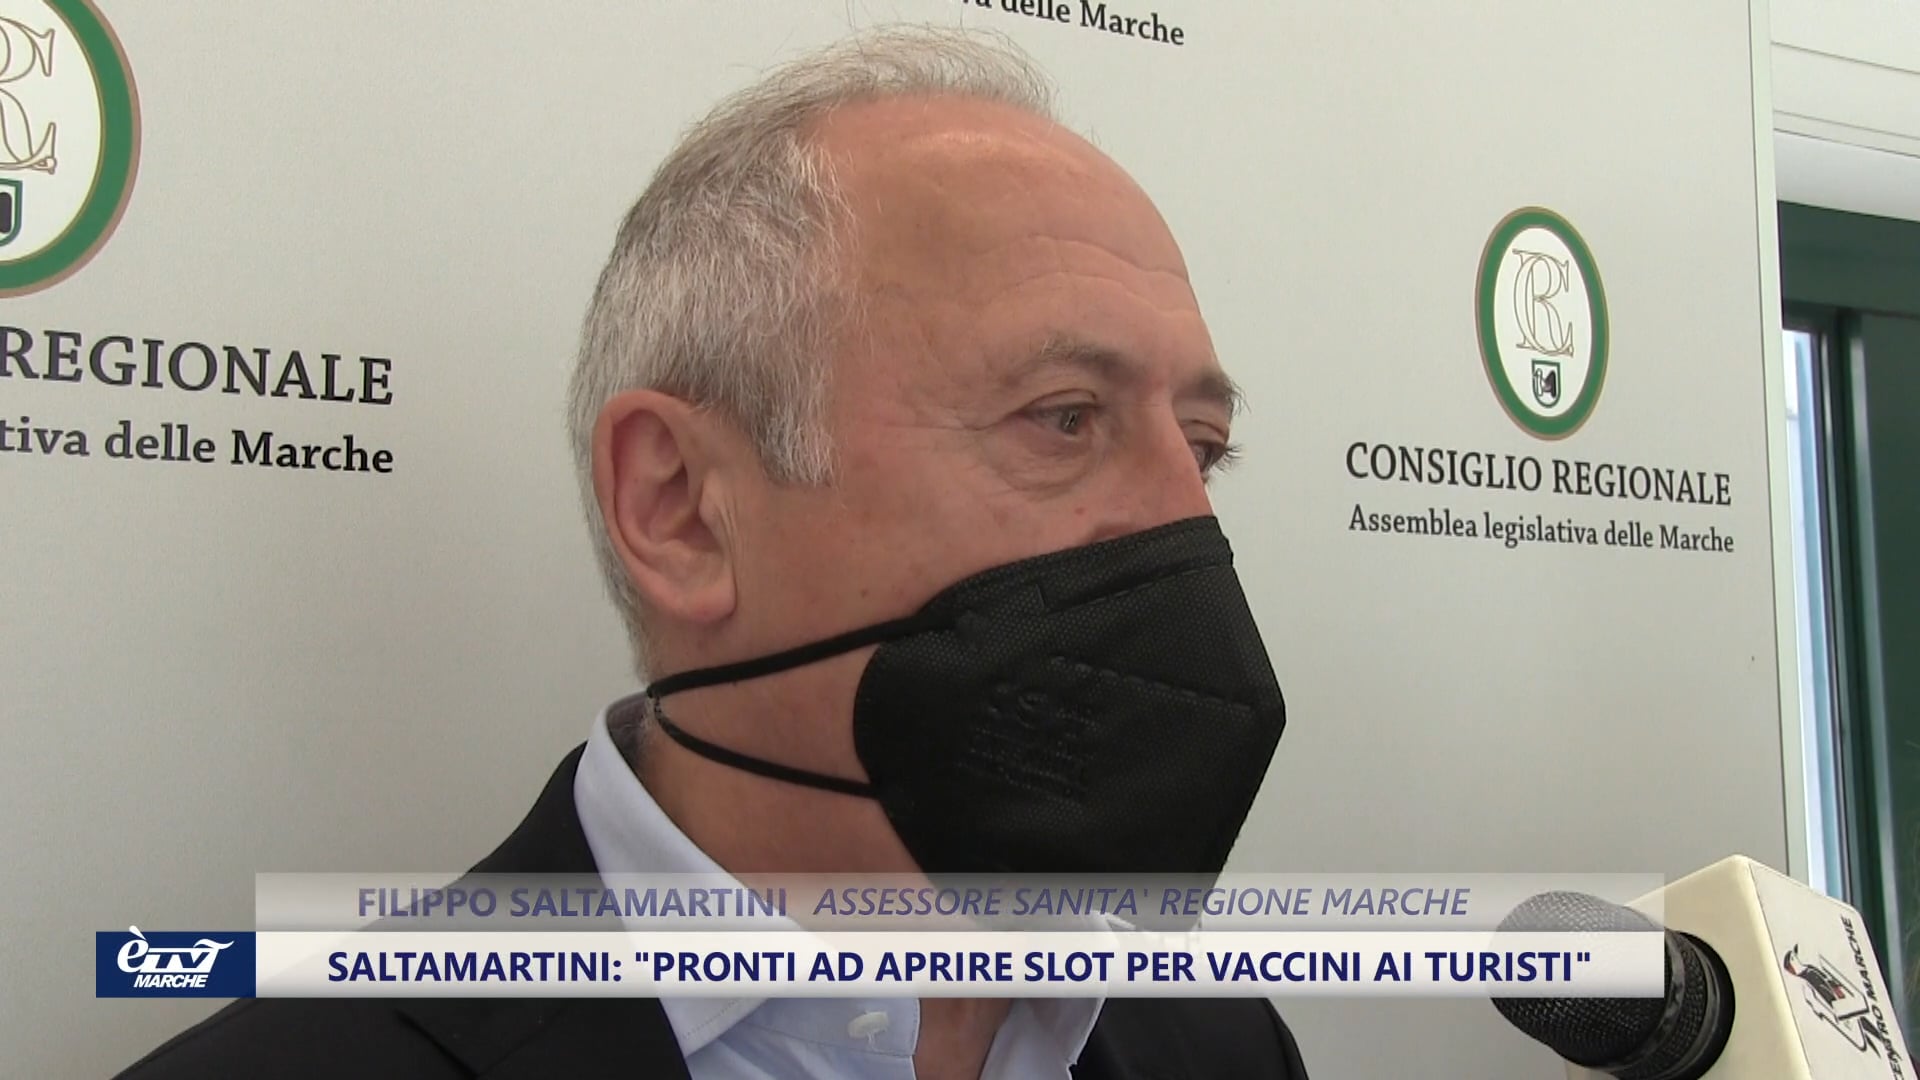 Vaccini Marche: In settimana arriva lo “slot” di prenotazione per  i turisti